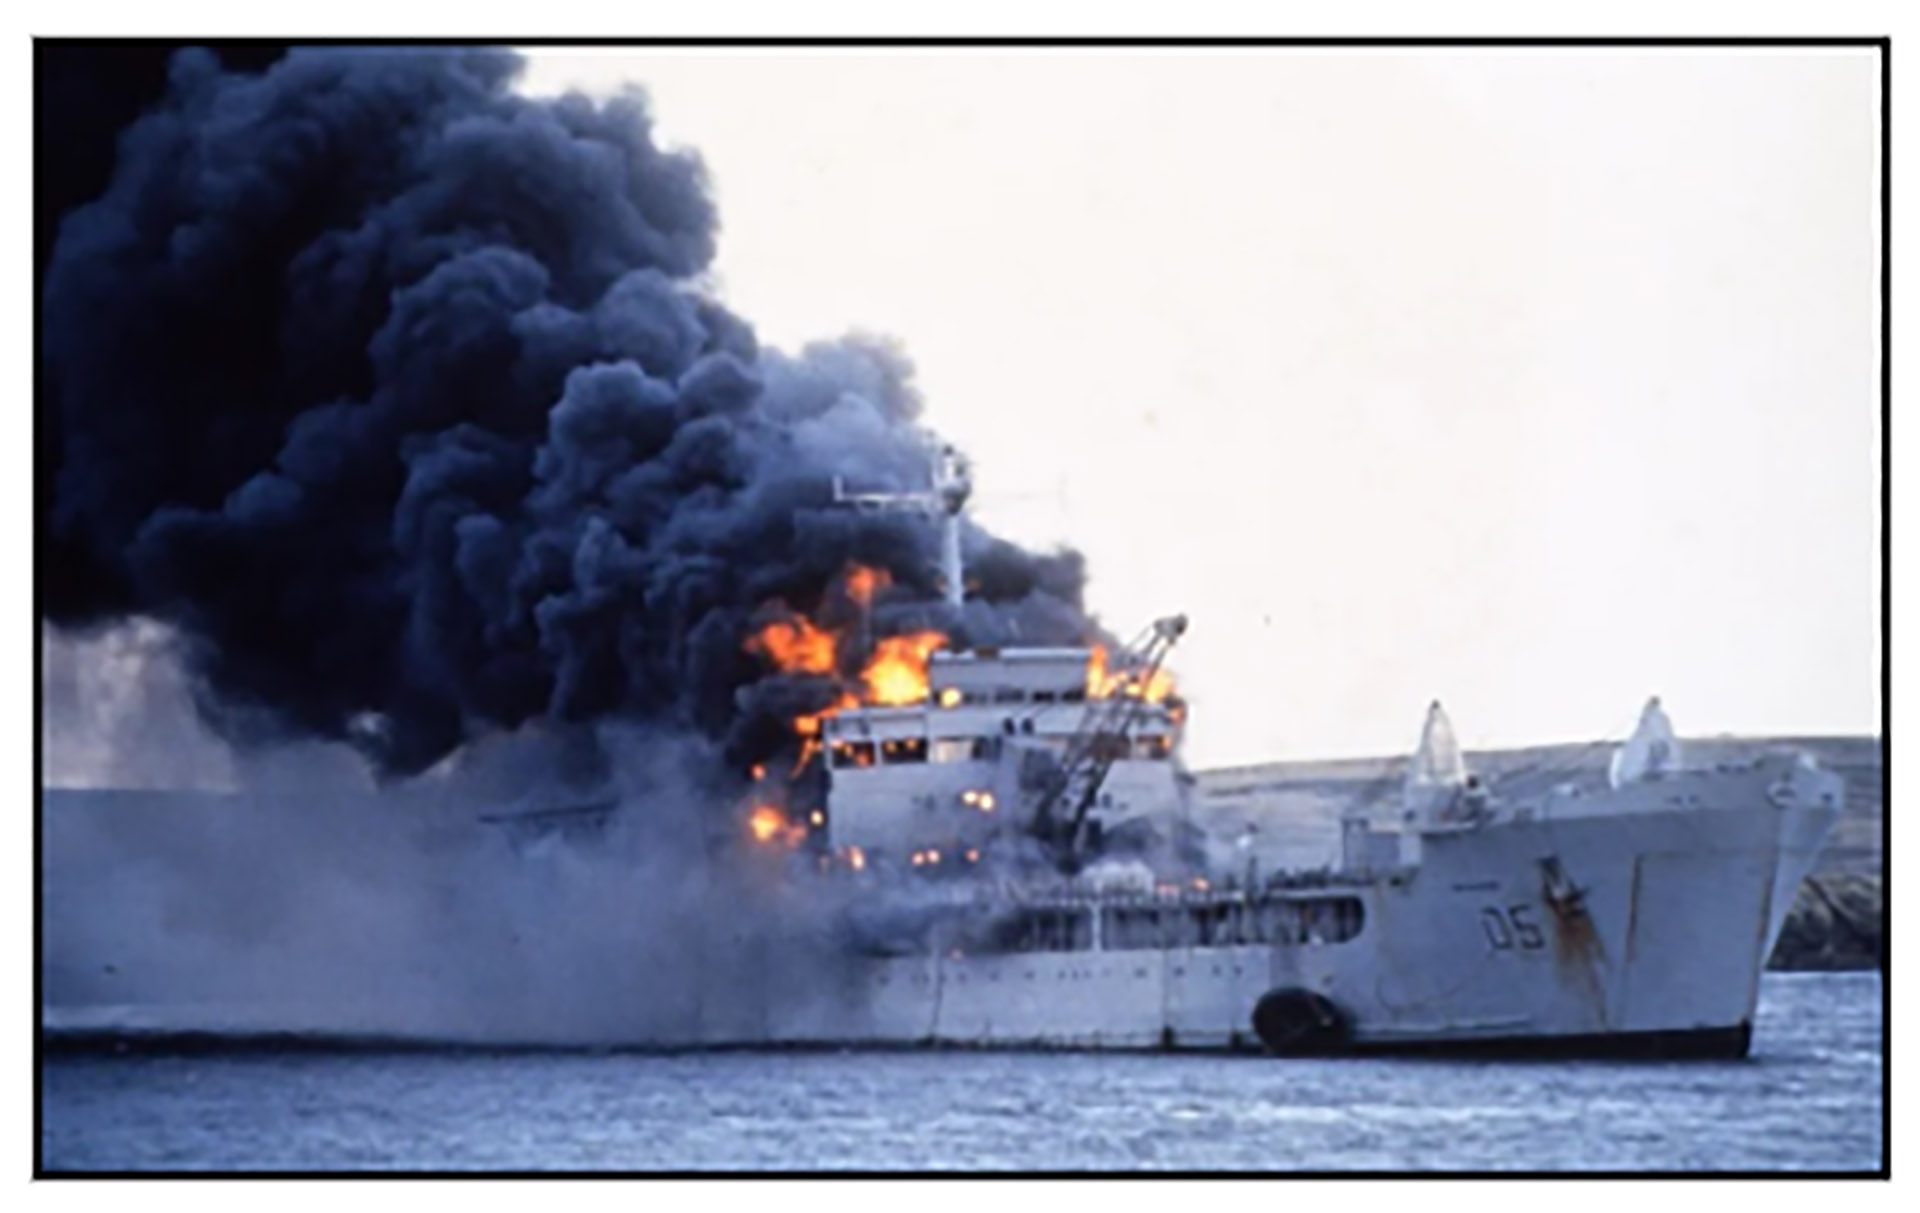 El desastre de Bahía Agradable: el mortífero ataque aéreo y el pedido inglés 41 años después del “día más negro de la flota”